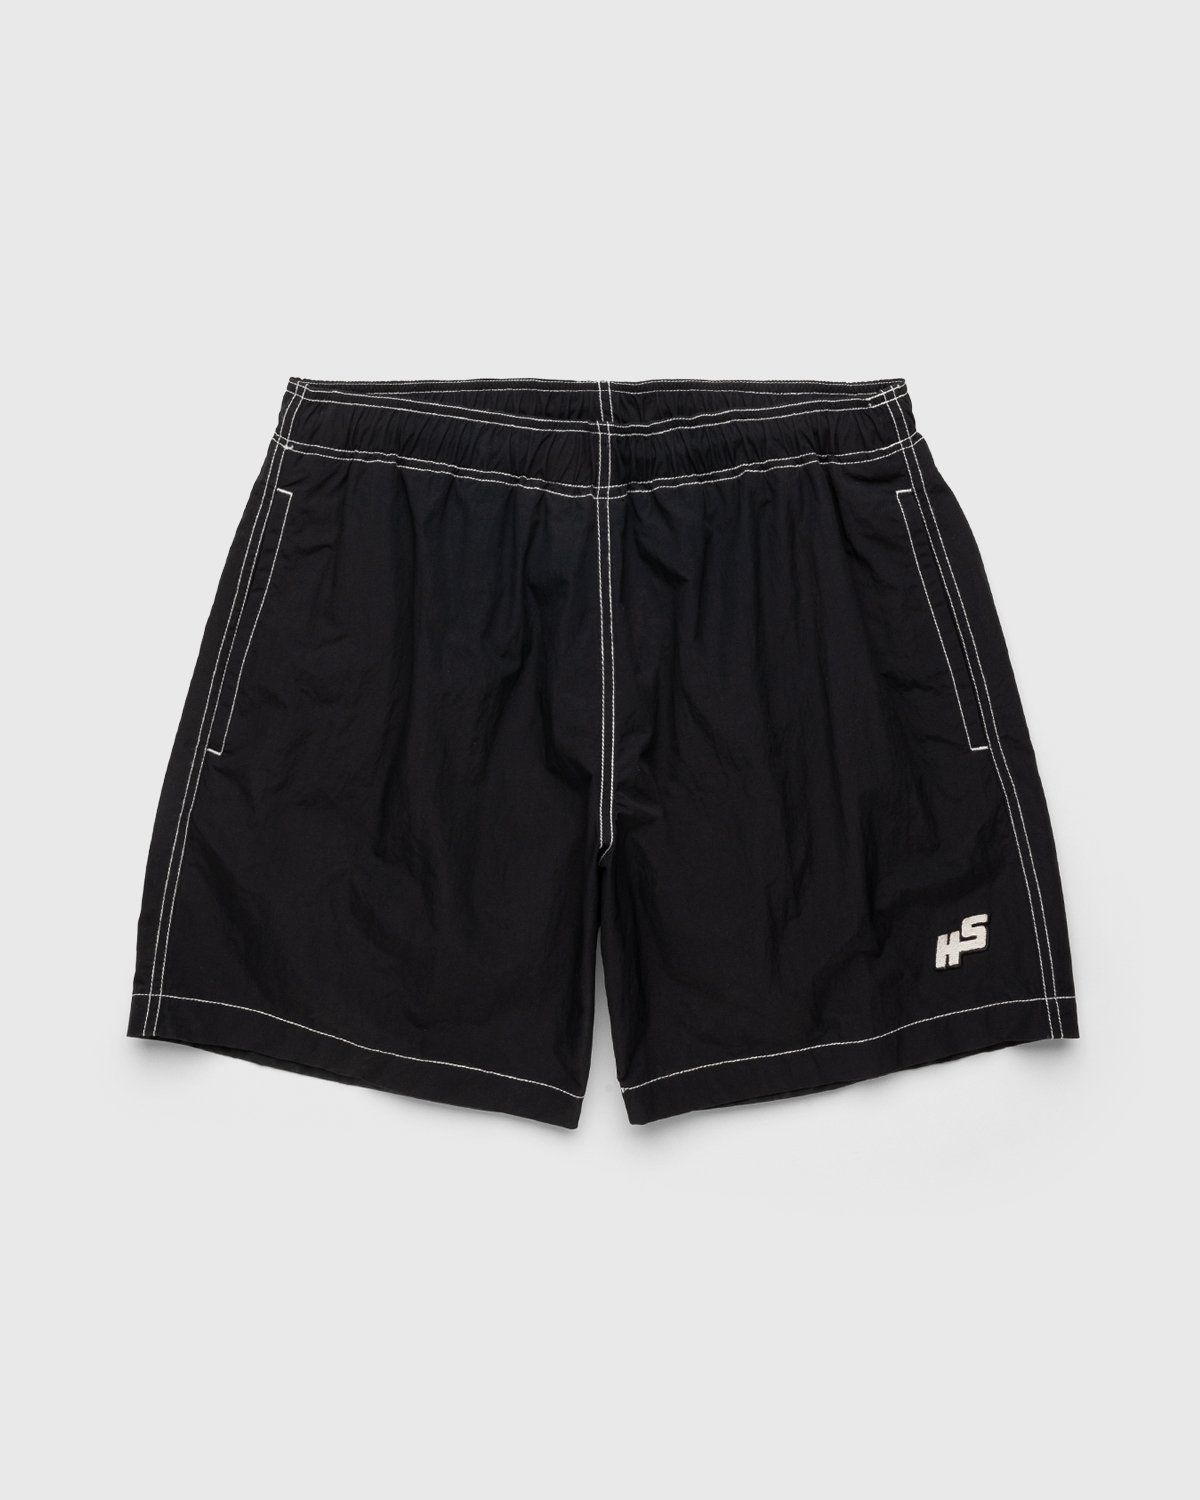 Highsnobiety – Contrast Brushed Nylon Water Shorts Black - Active Shorts - Black - Image 1